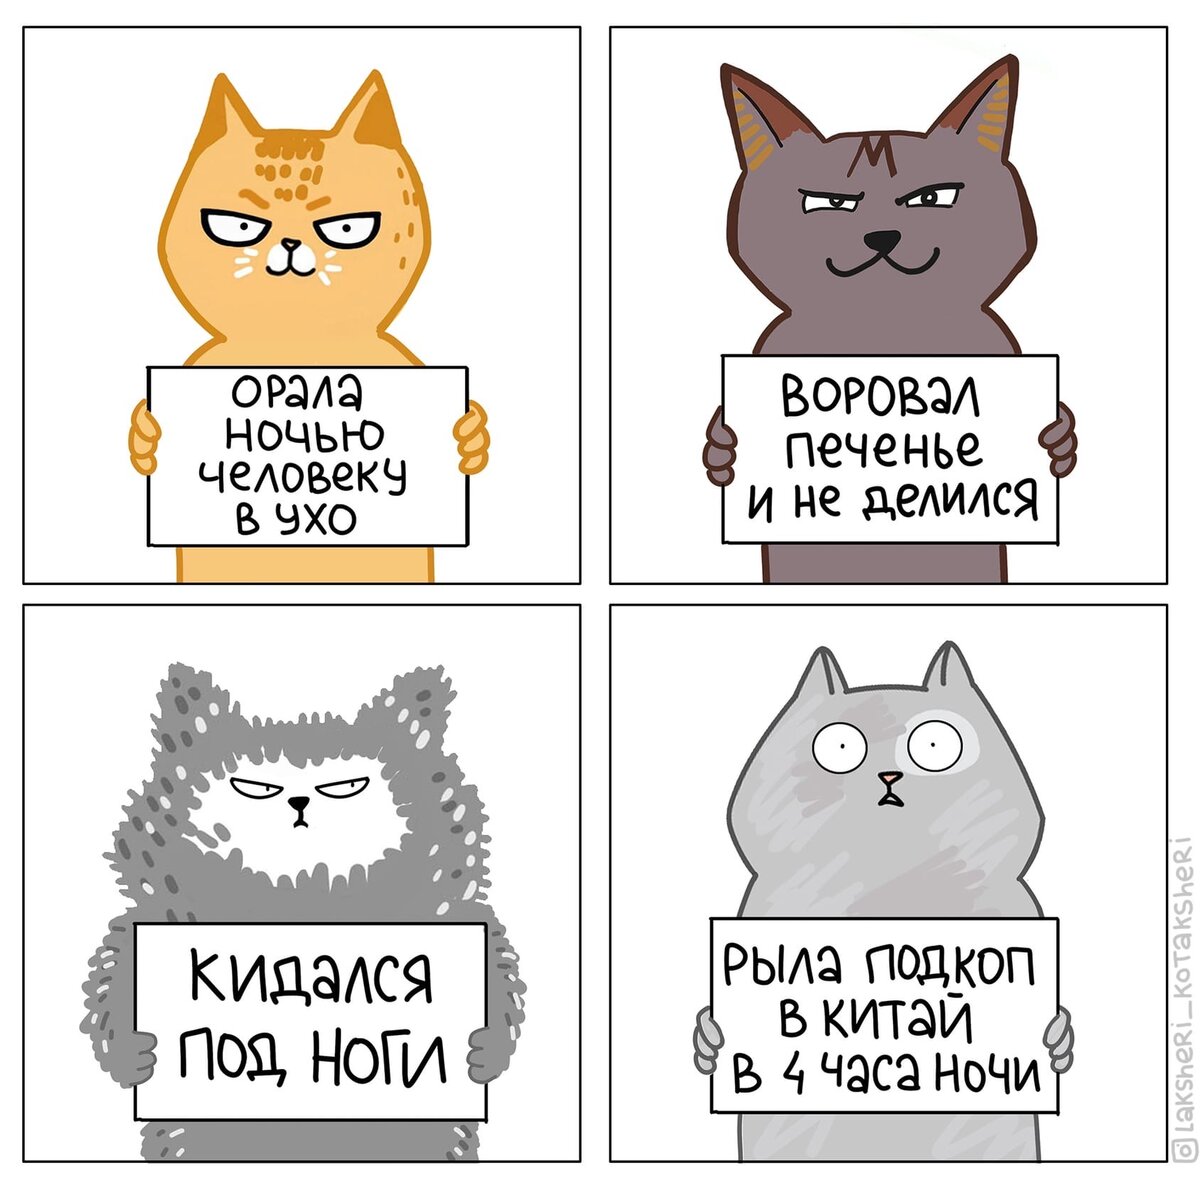 Художница которые могут рассмешить тех, у кого есть кот, рисует смешные комиксы про жизнь с мужем и 4мя котами.